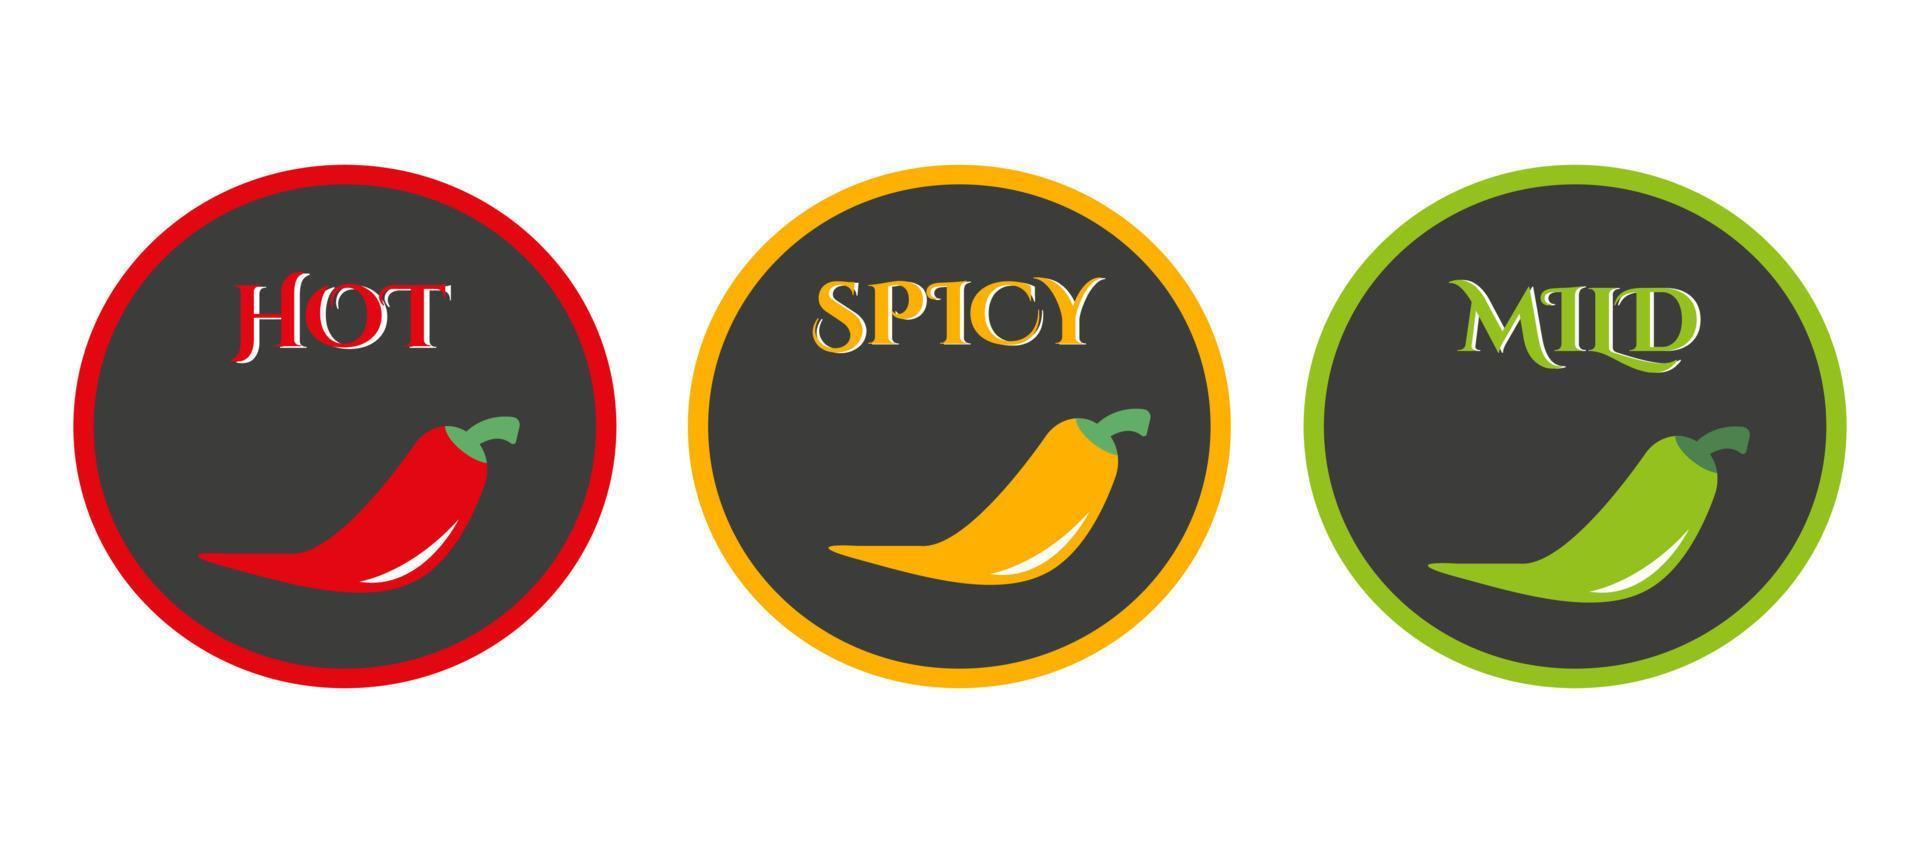 etiquetas de el nivel de caliente pimienta en alimento. caliente, picante y templado icono con rojo, amarillo y verde chile pimientos. vector ilustración